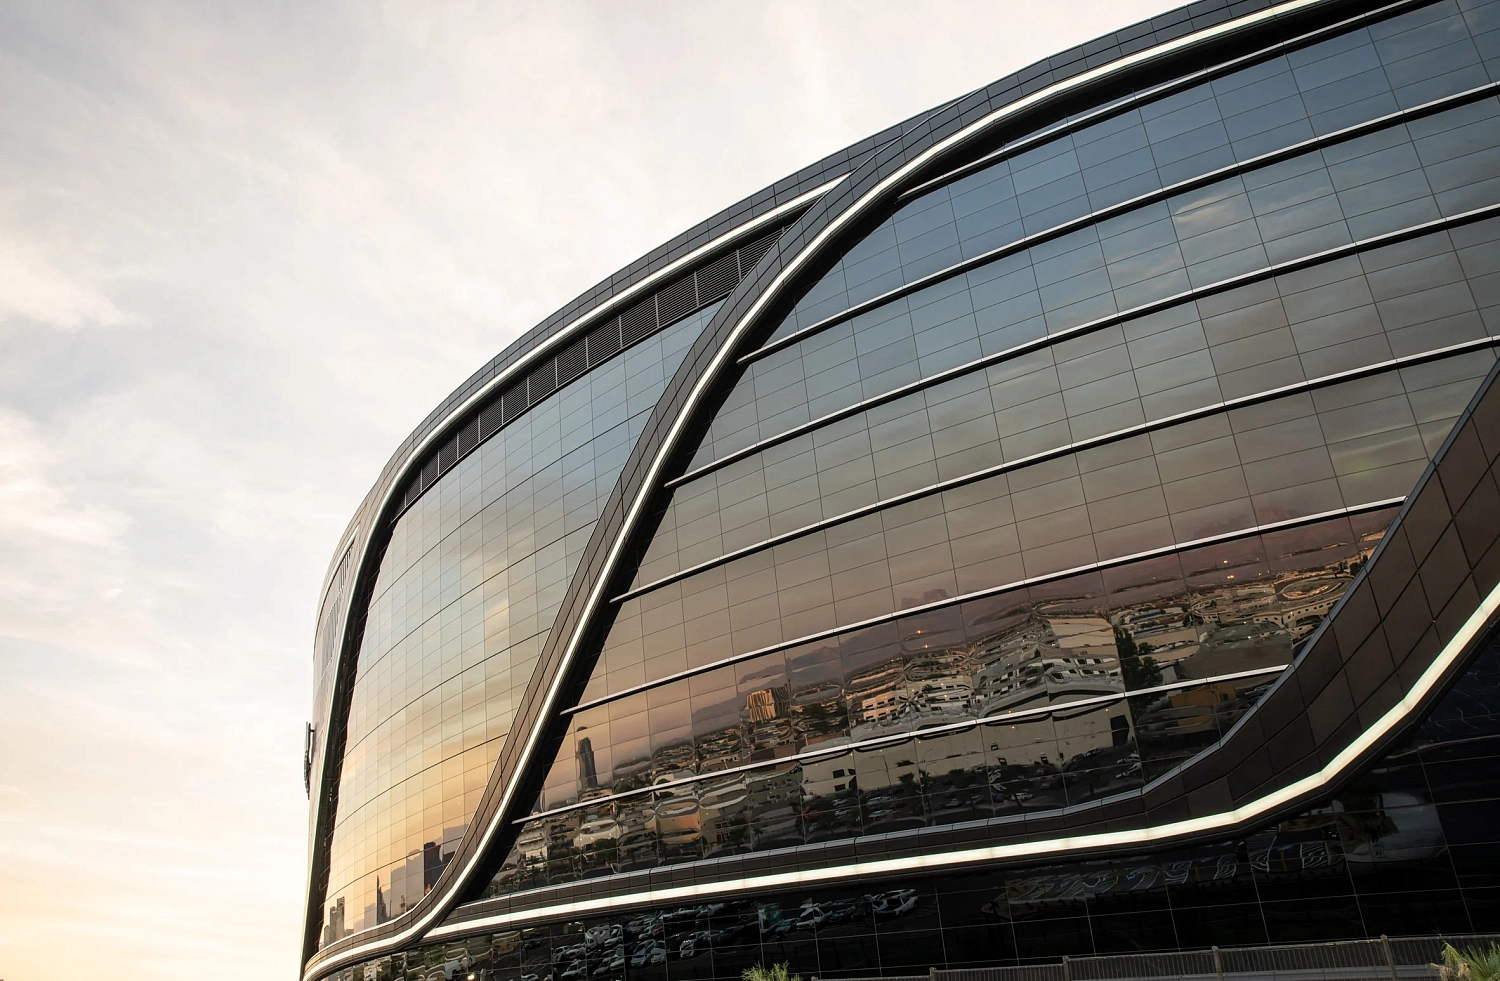 Manica Architecture спроектировали чёрный, гладкий, вдохновлённый спортивными автомобилями стадион Суперкубка НФЛ